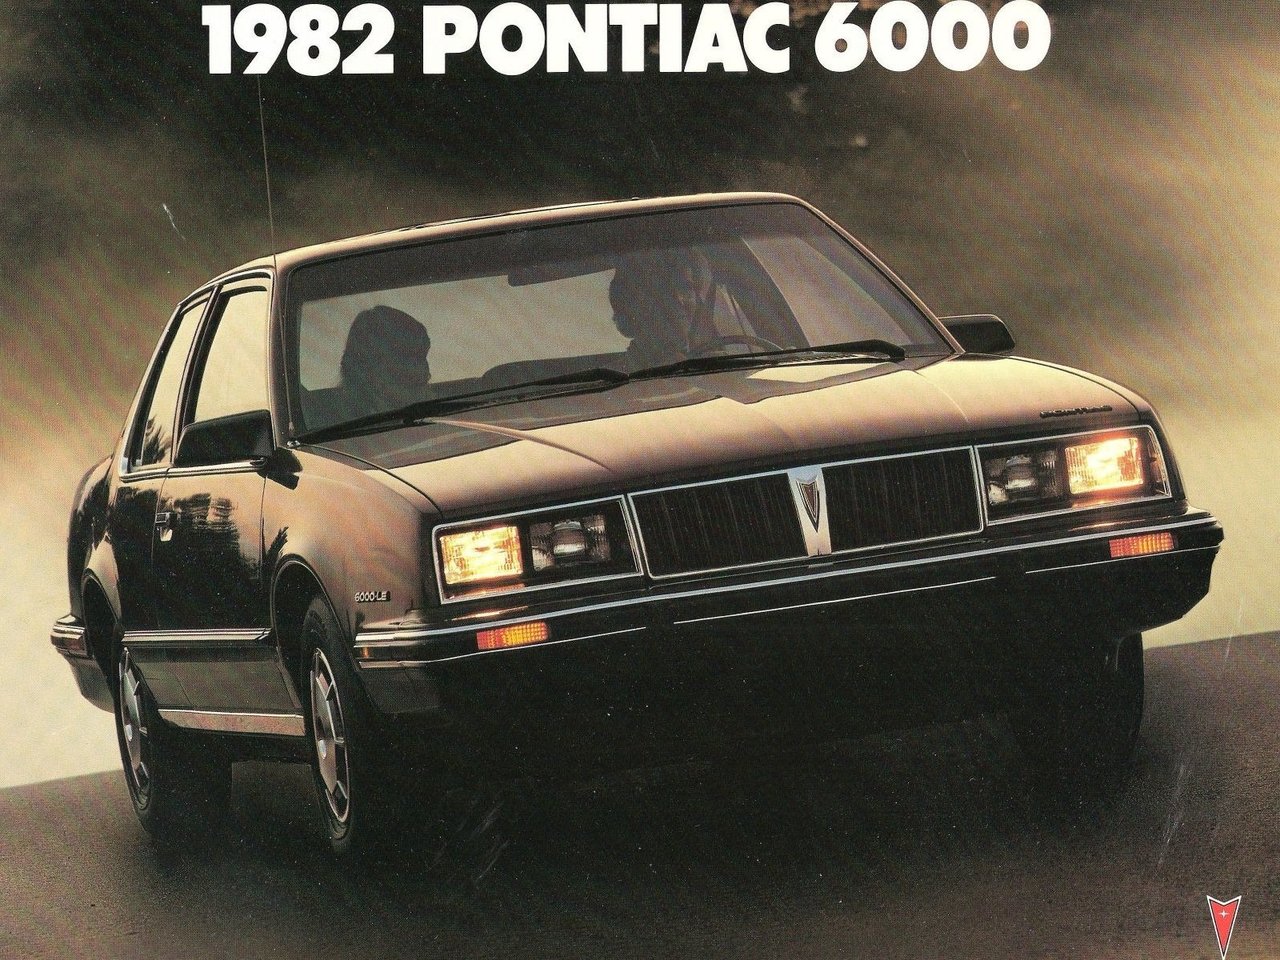 Расход газа двух комплектаций купе Pontiac 6000. Разница стоимости заправки газом и бензином. Автономный пробег до и после установки ГБО.